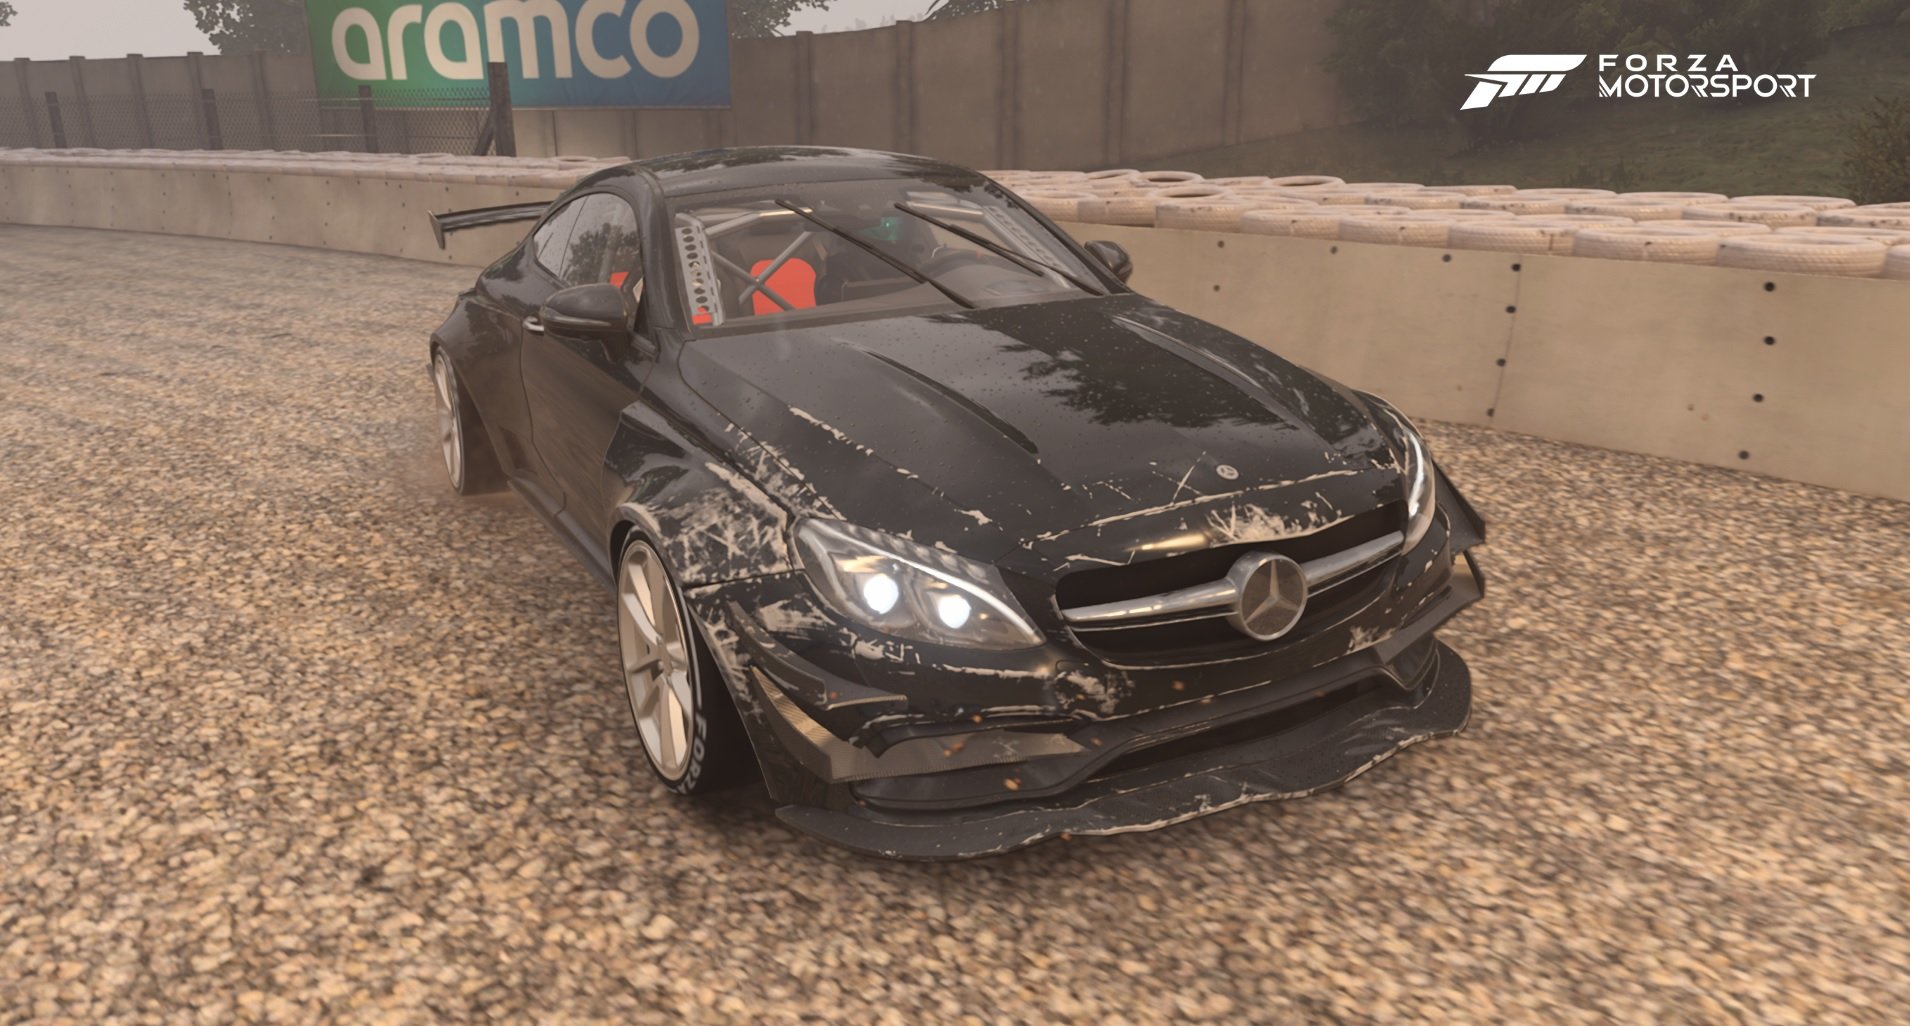 Os danos que os carros sofrem no jogo também chama atenção pelo realismo